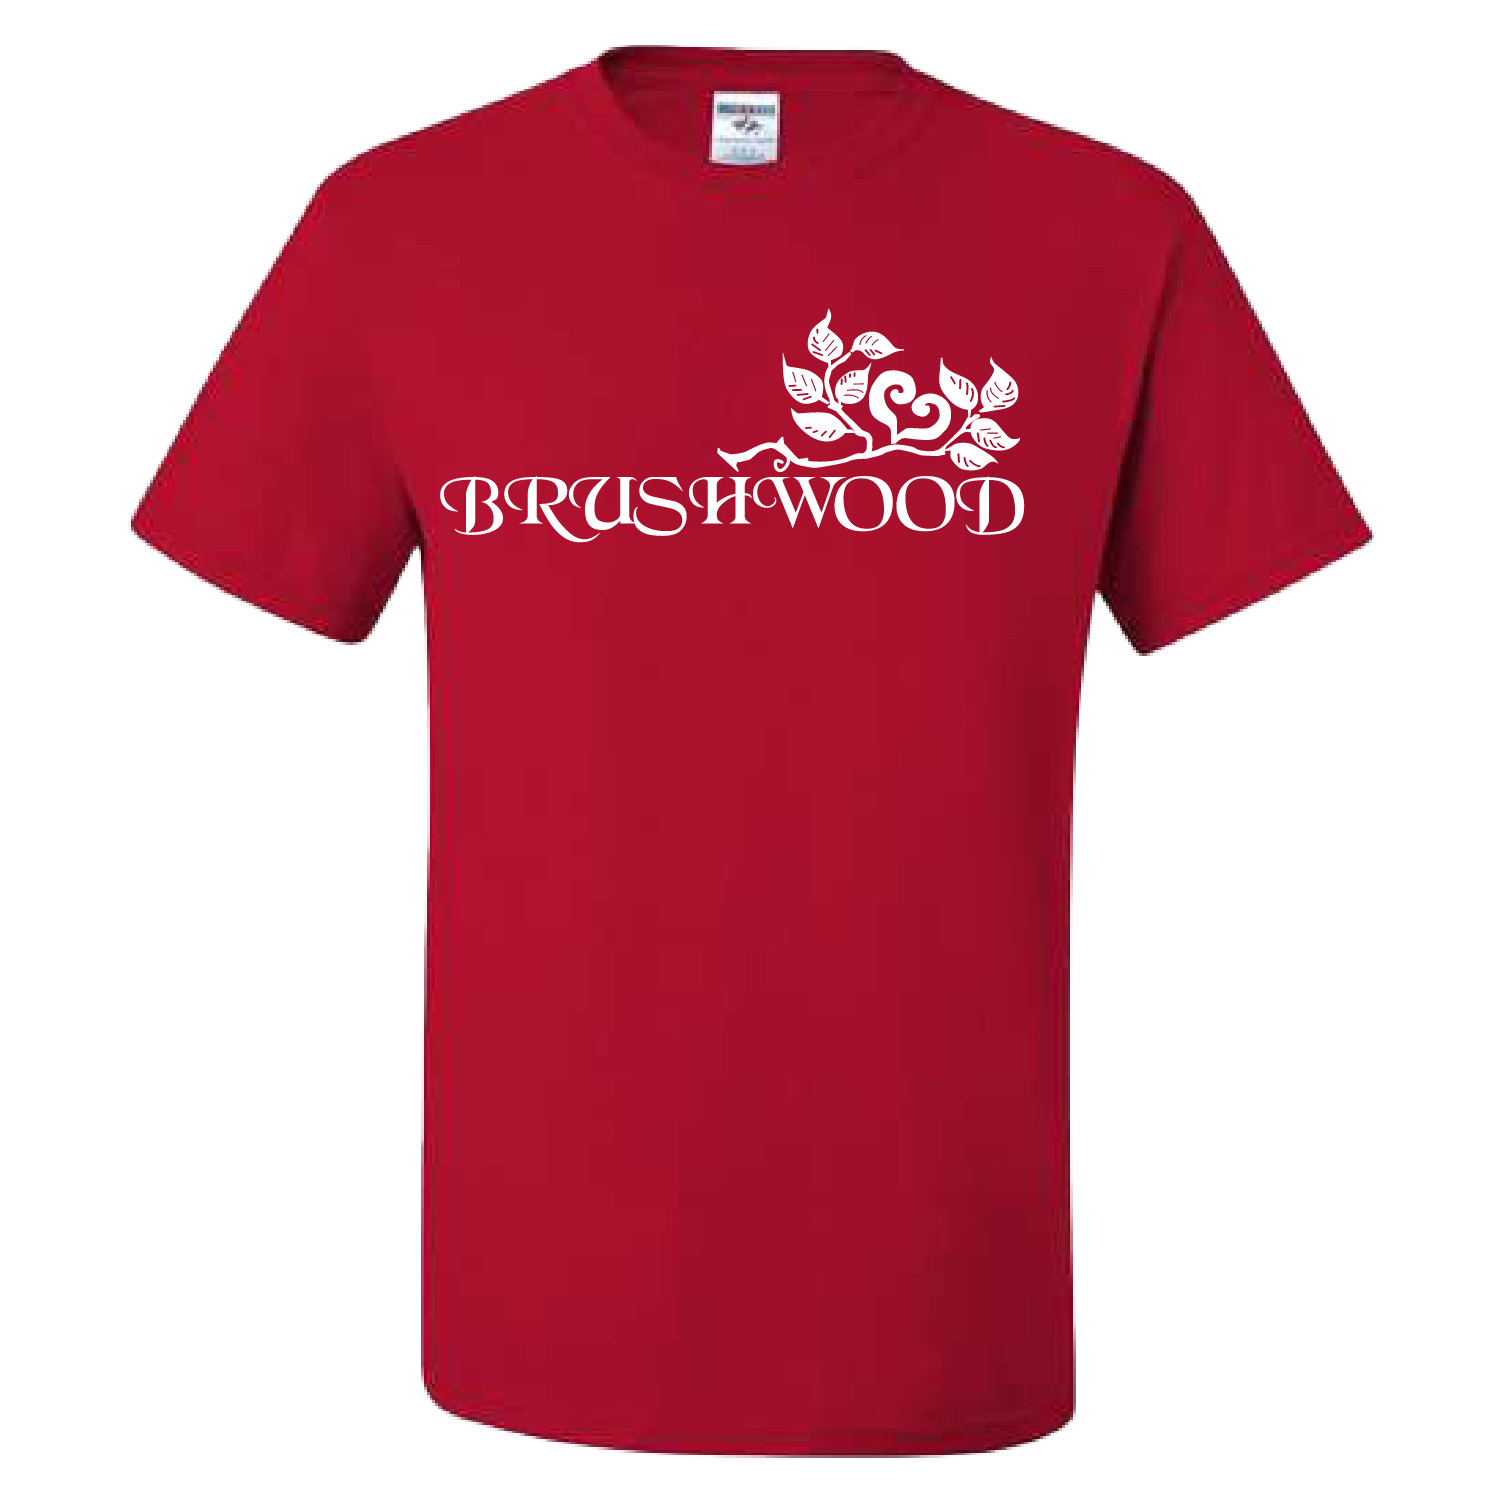 Brushwood – Cotton Short Sleeve Shirt – Red product image